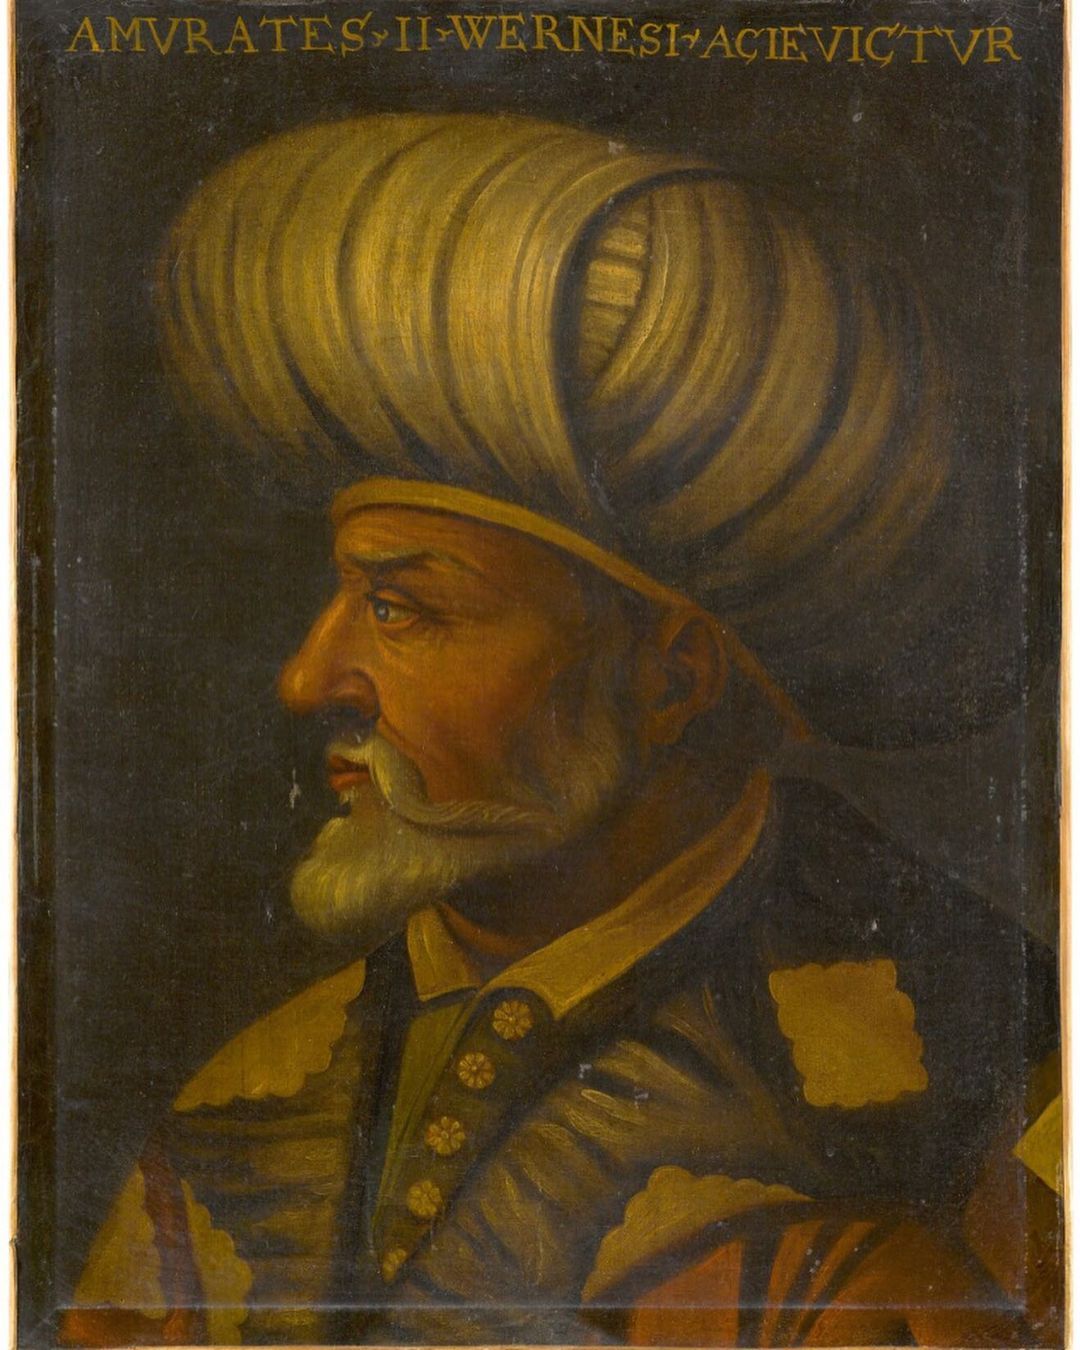 Osmanlı padişahlarının resmedildiği 6 tablo, açık arttırmaya çıkartıldı - Sayfa:4